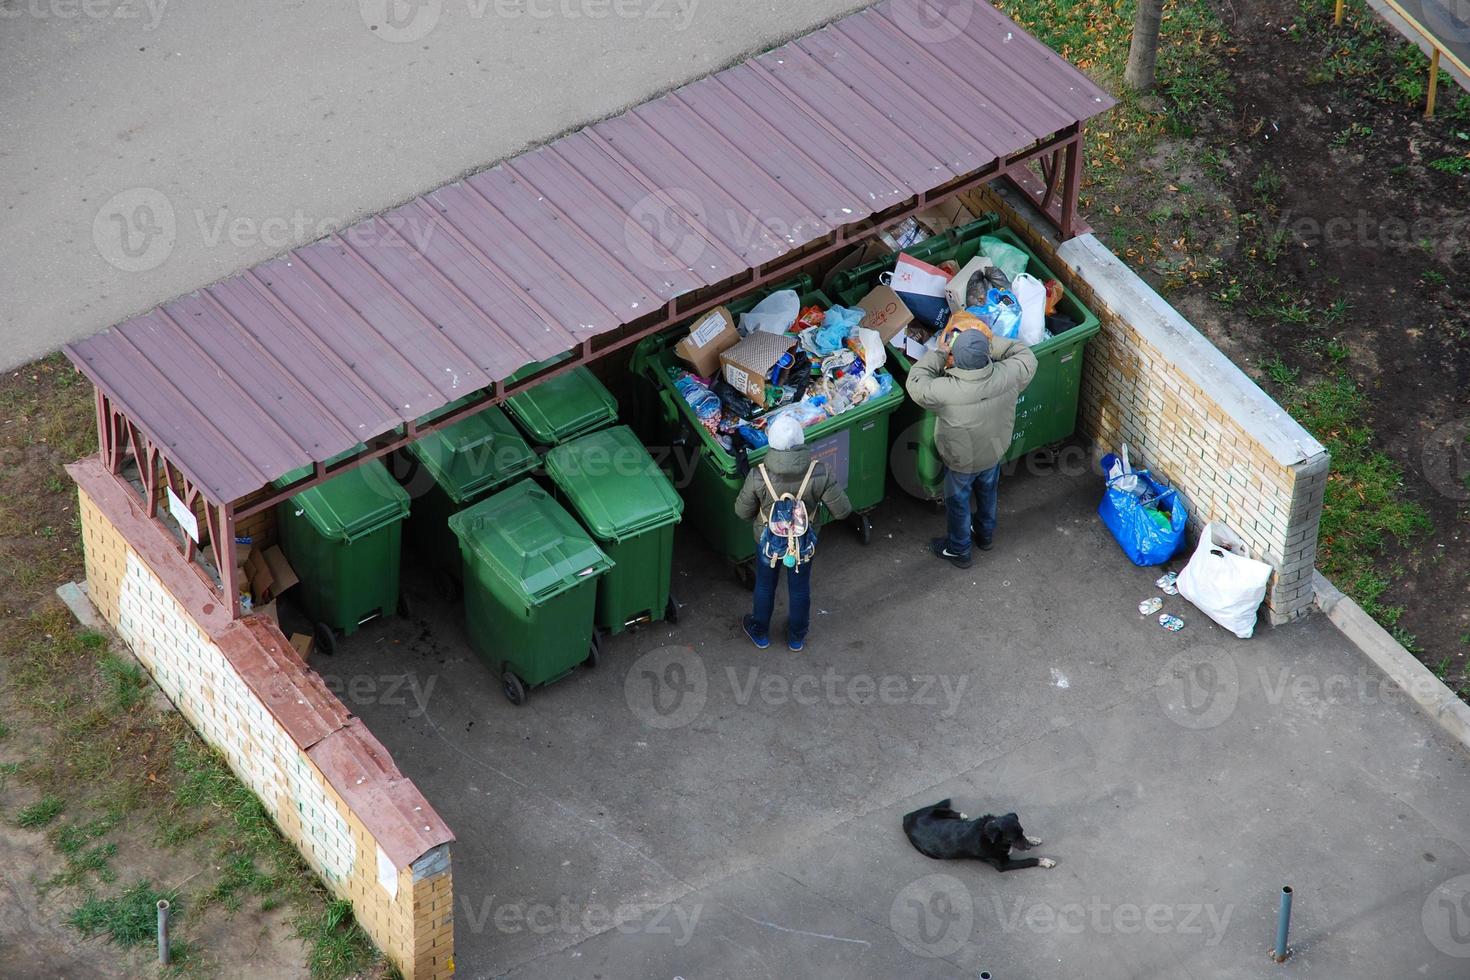 persone scavando nel cassonetti e alimentazione loro cane, Mosca, 28.10.2019 foto